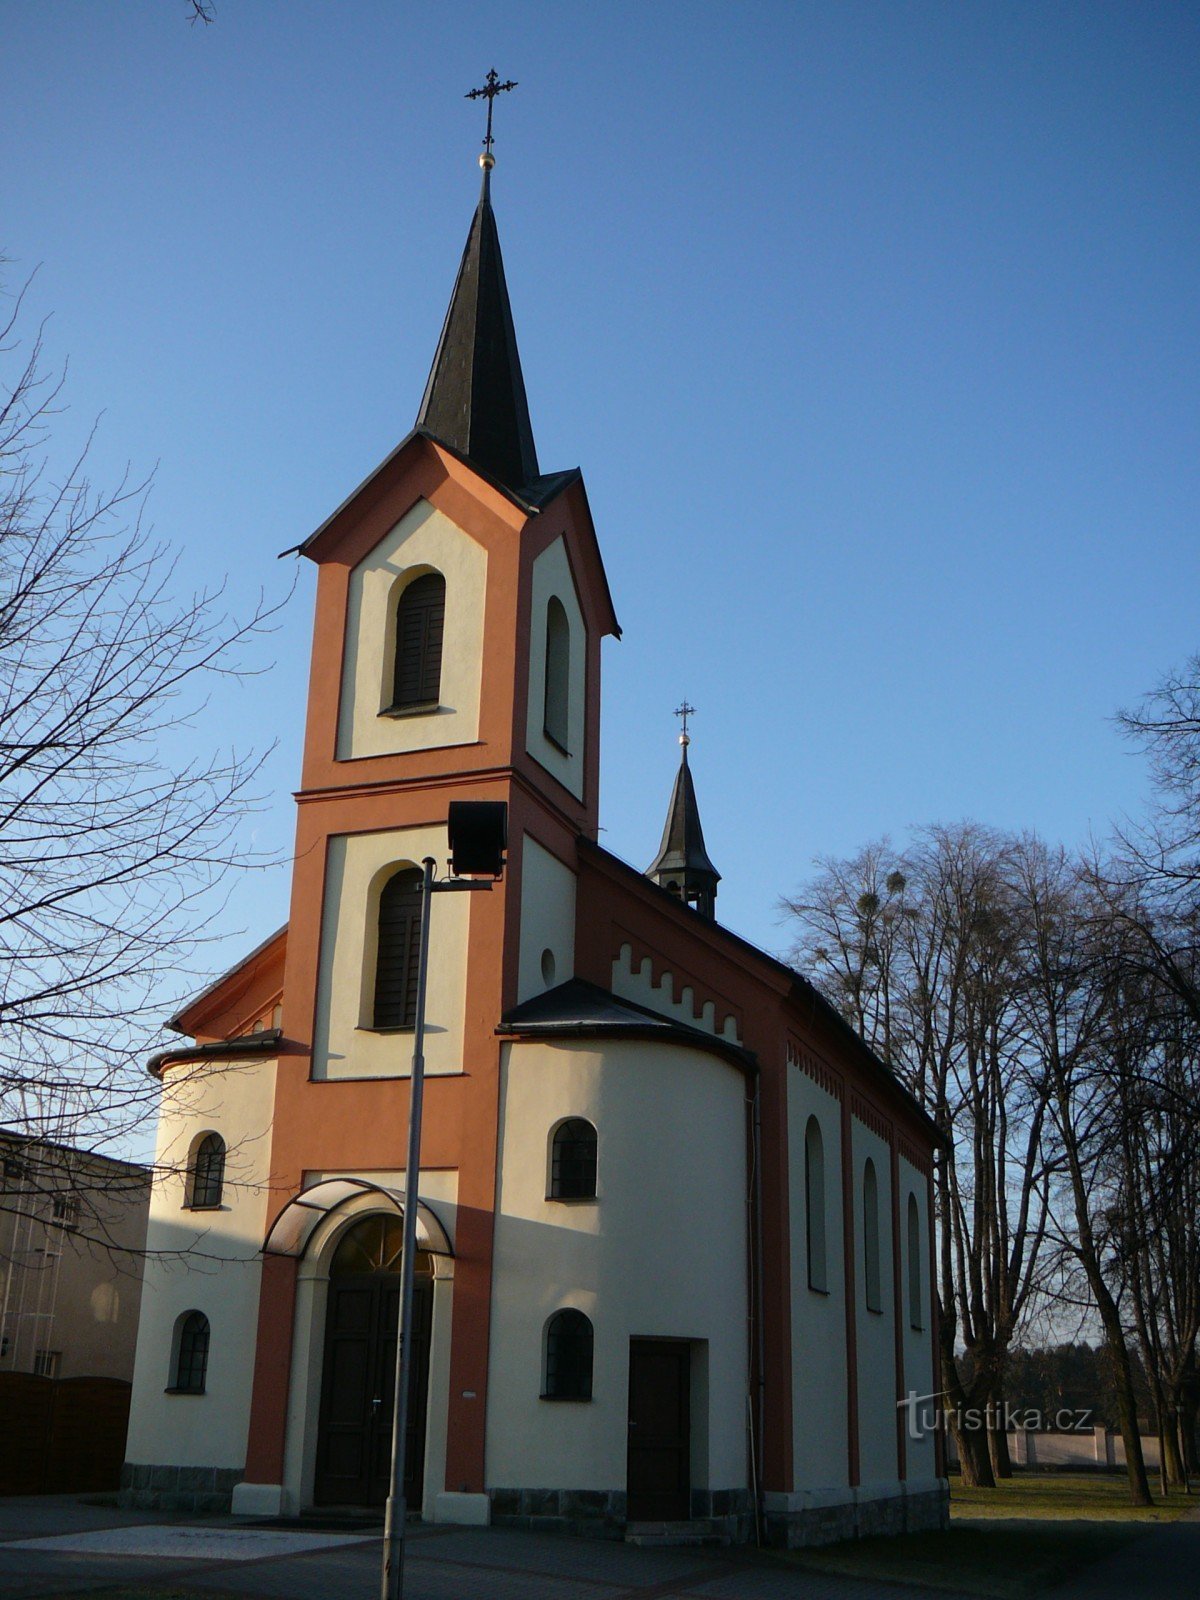 capela de São João de Nepomuk em Sviadnov